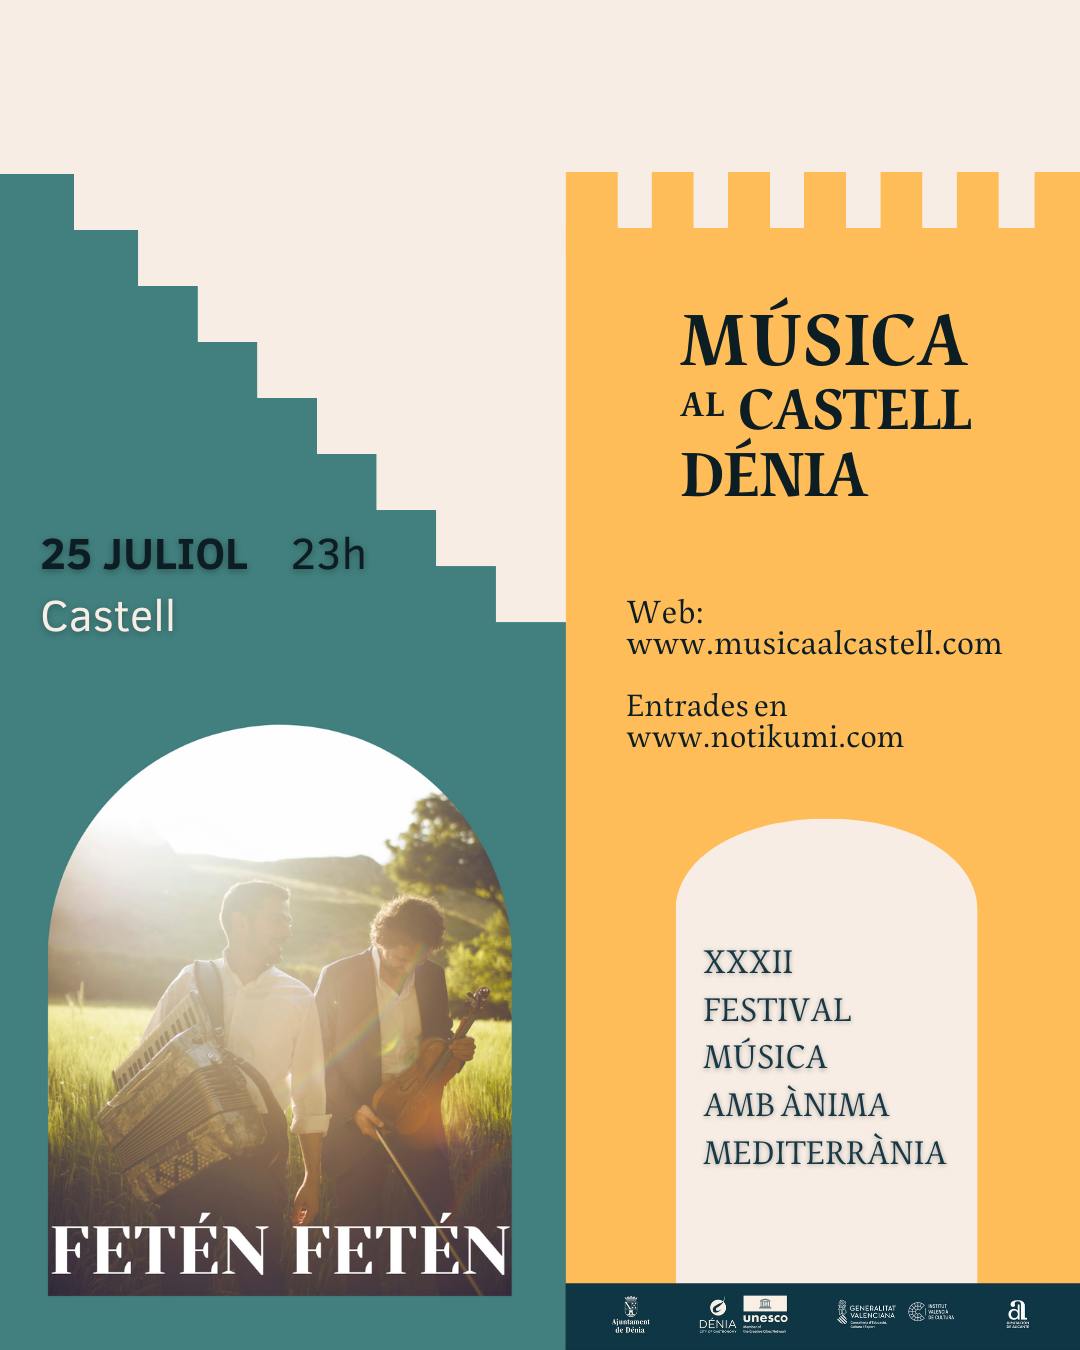 Festival de música Fetén Fetén en Dénia